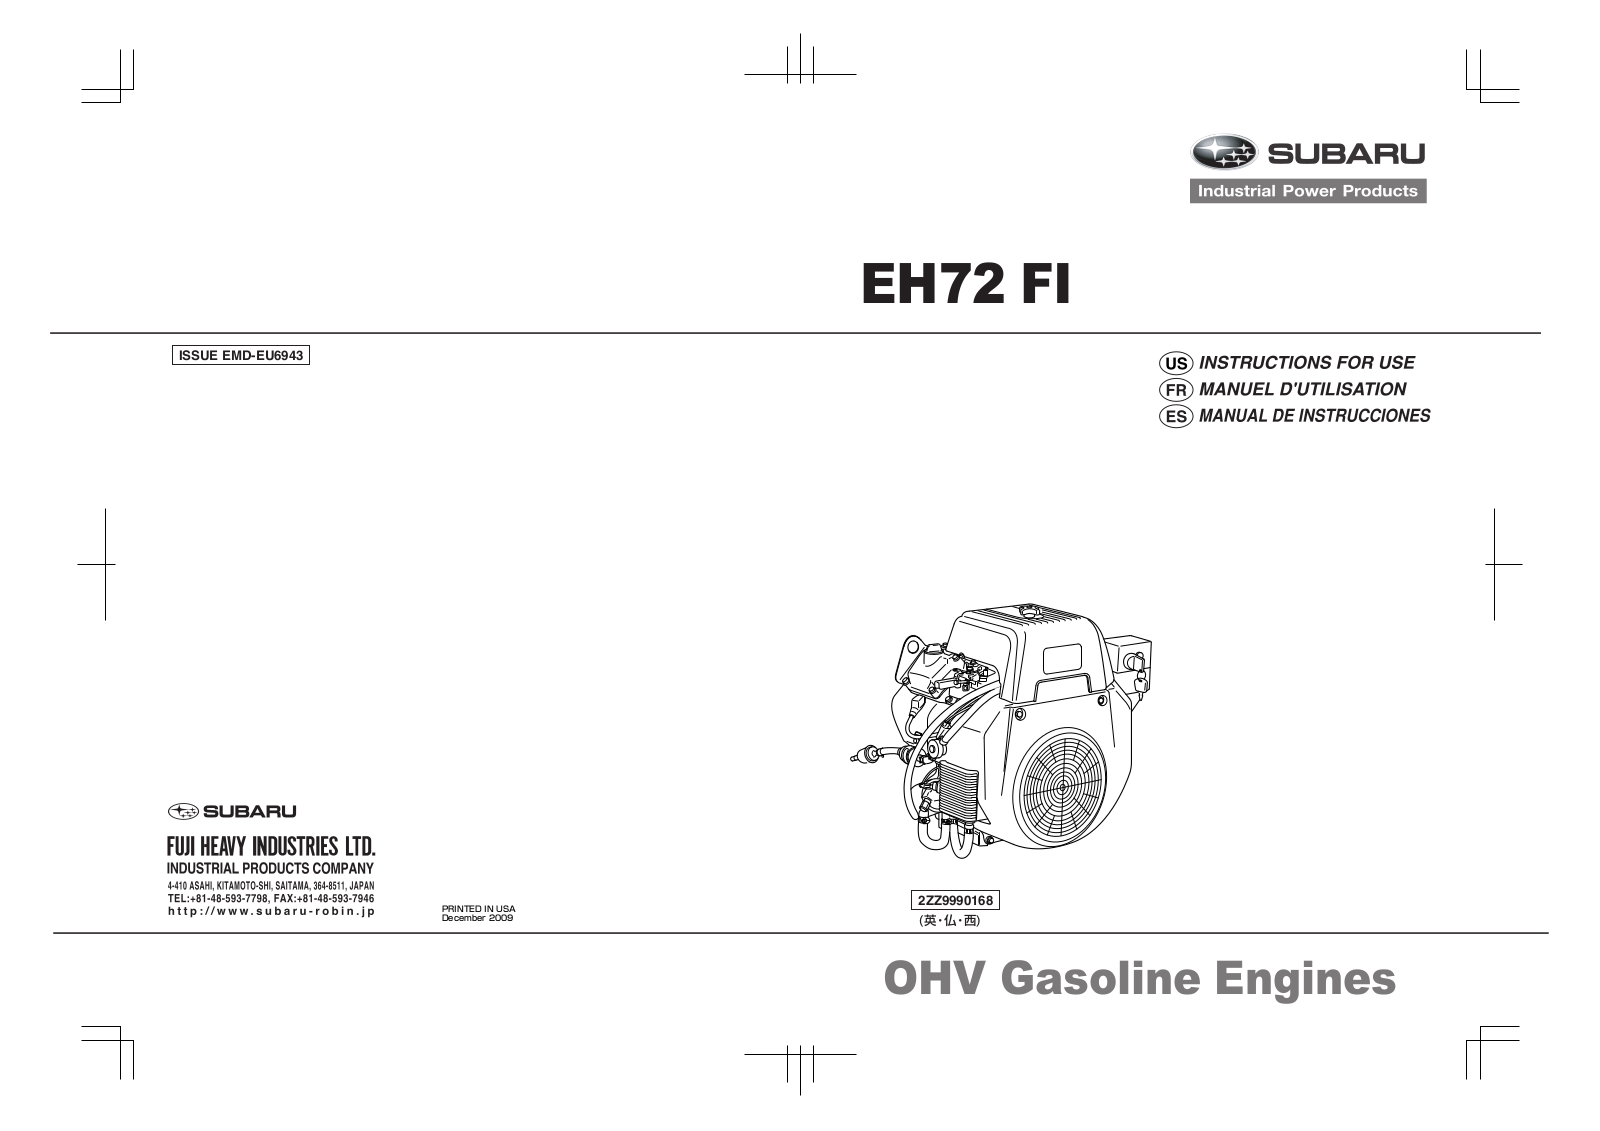 Subaru EH72 FI User Manual